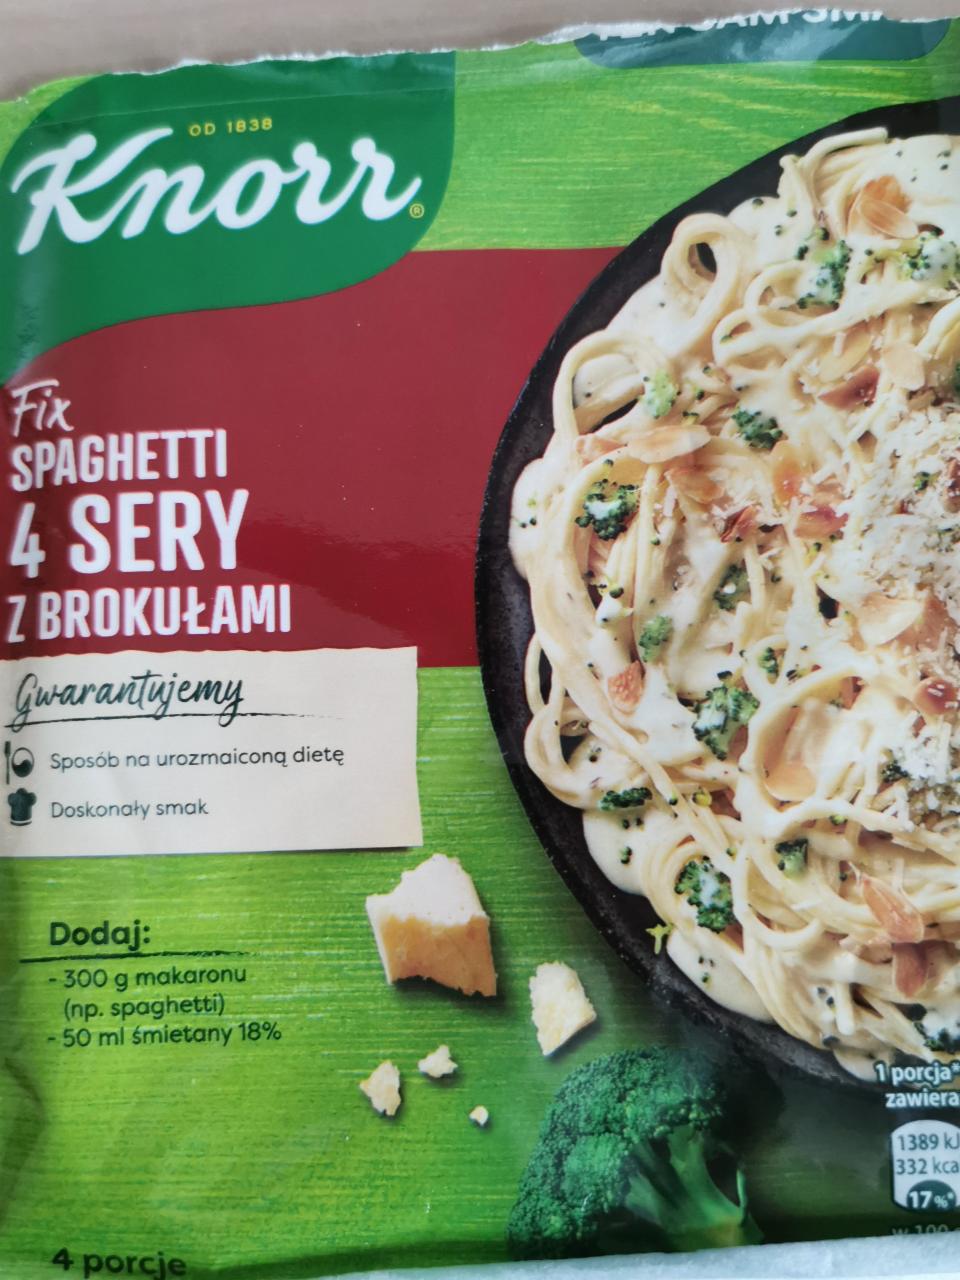 Fotografie - Fix Spaghetti 4 sery z brokułami Knorr